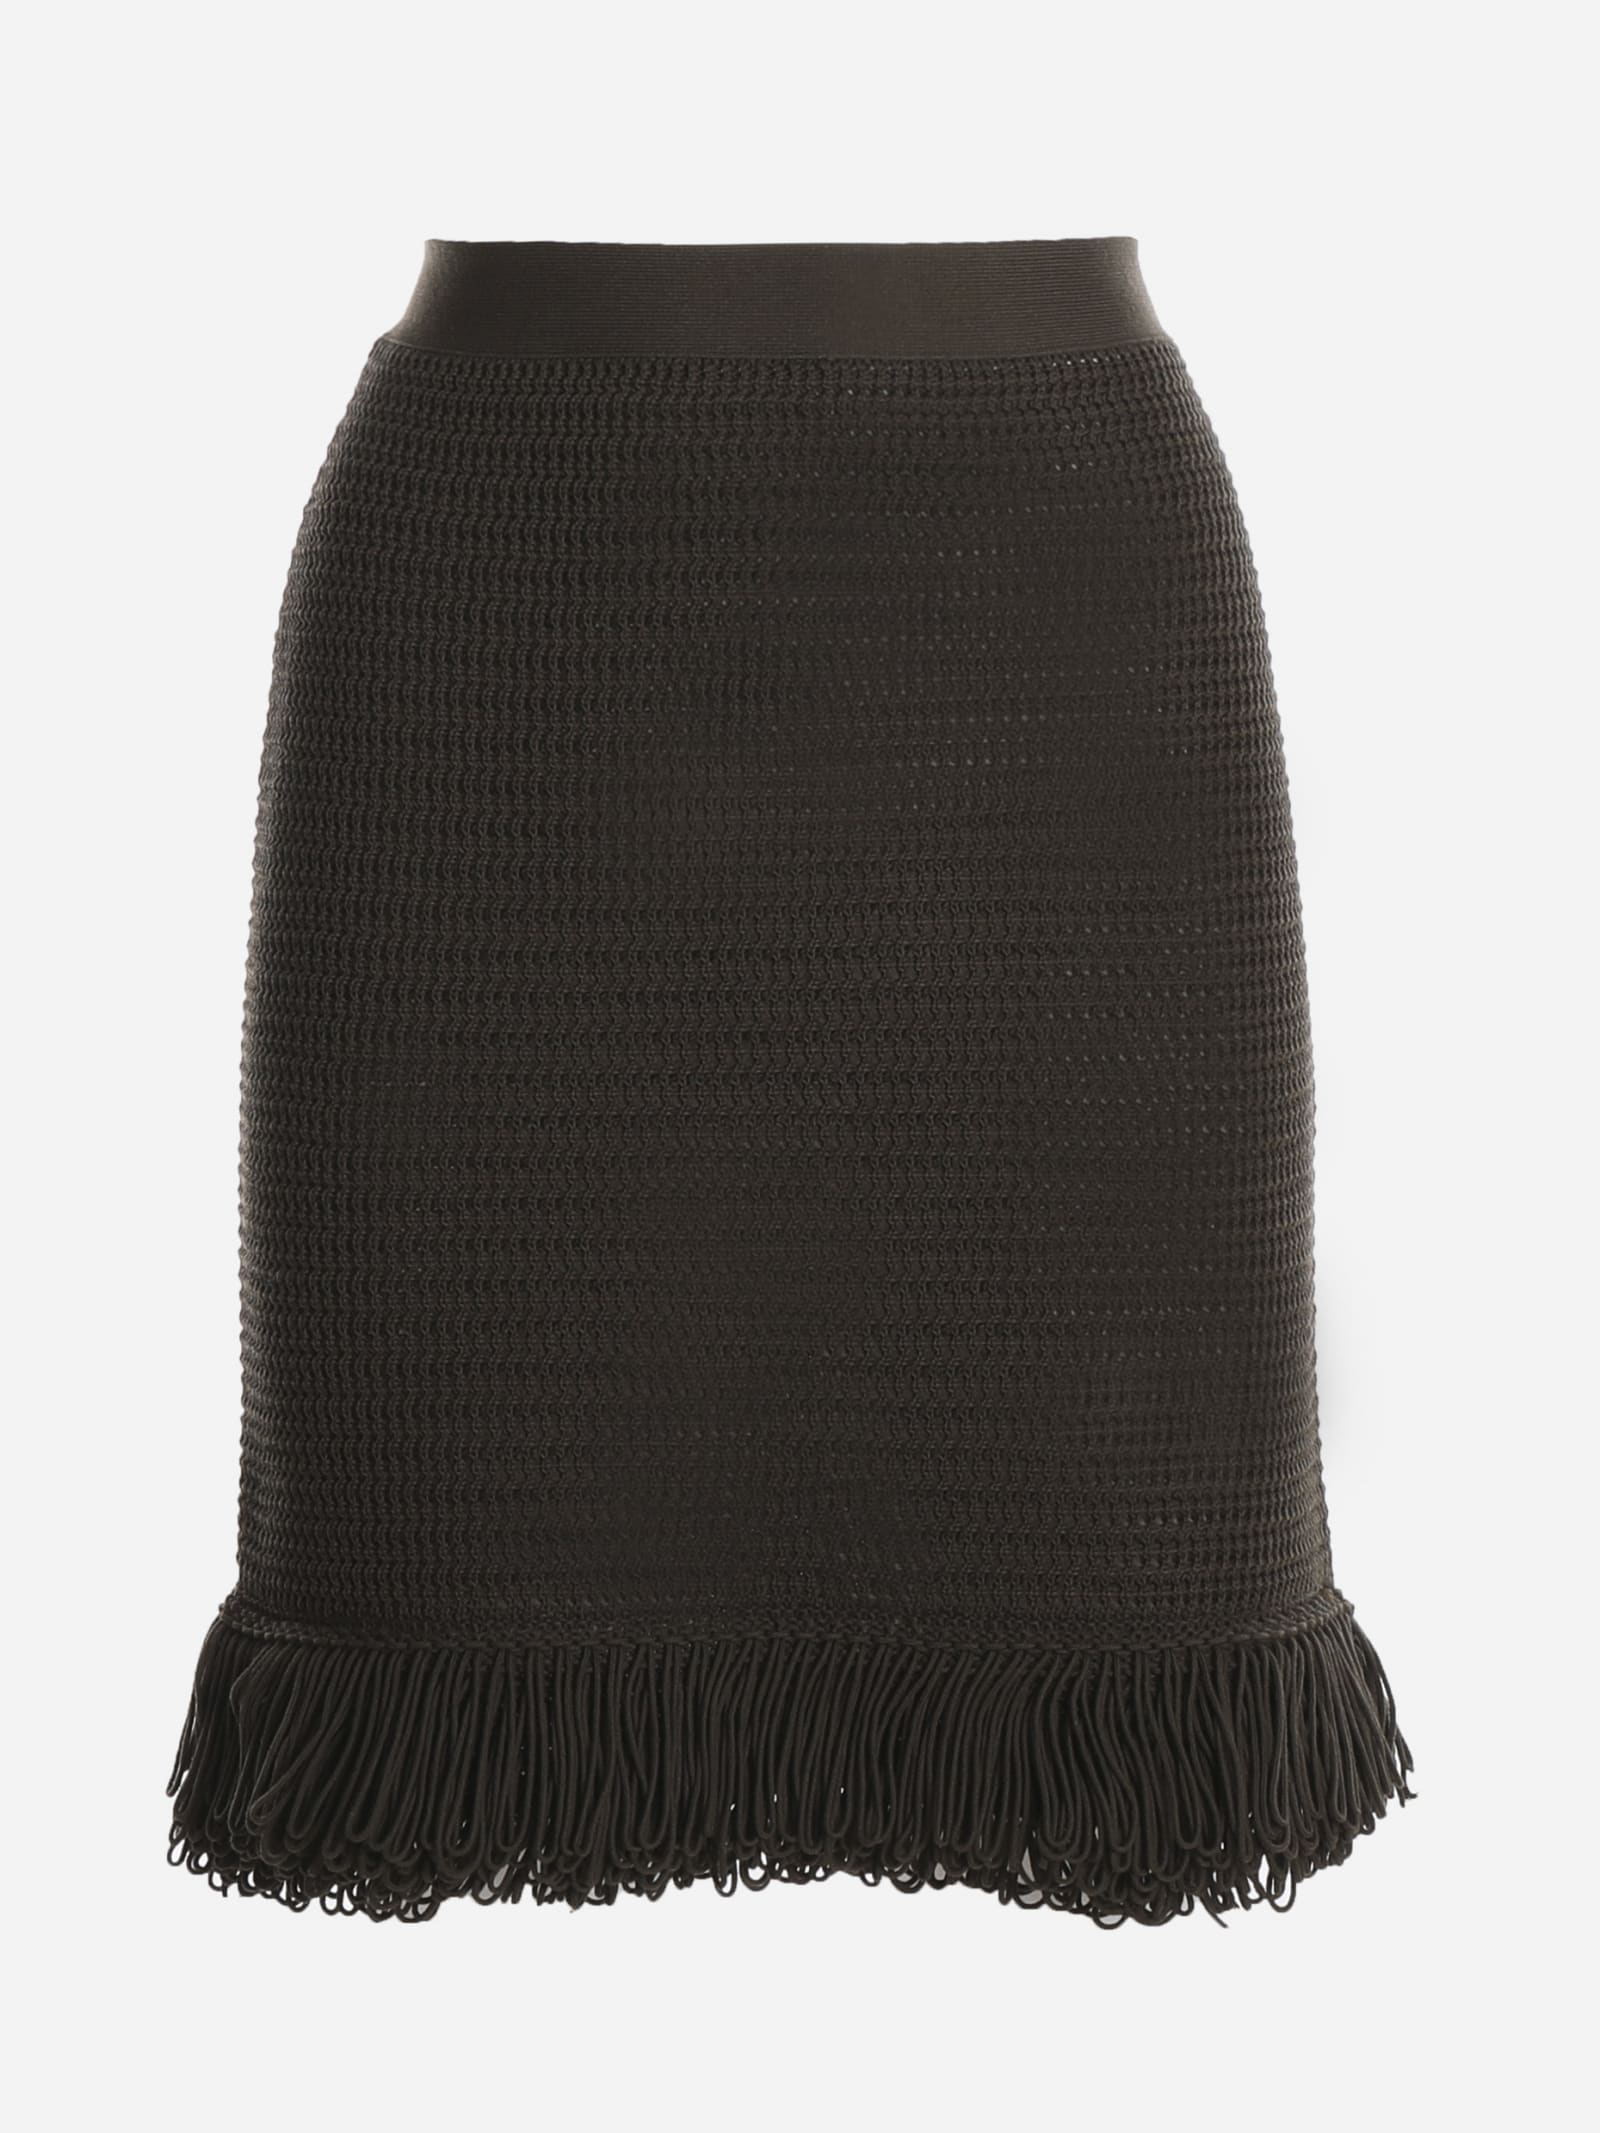 Bottega Veneta Crochet-effect Knit Skirt With Fringed Ehm